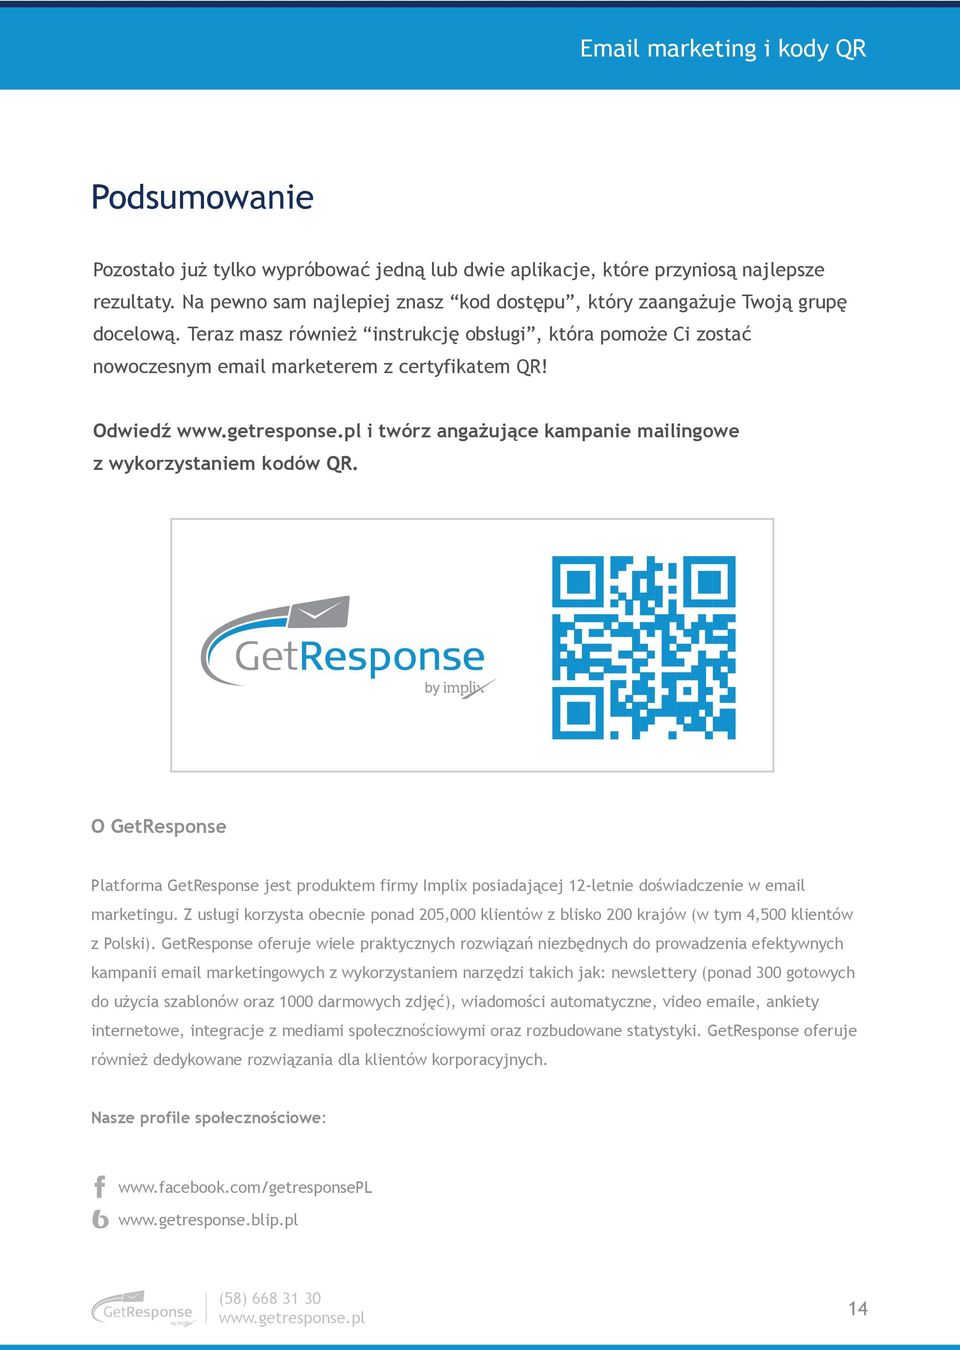 O GetResponse Platforma GetResponse jest produktem firmy Implix posiadaj"cej 12-letnie do!wiadczenie w email marketingu.